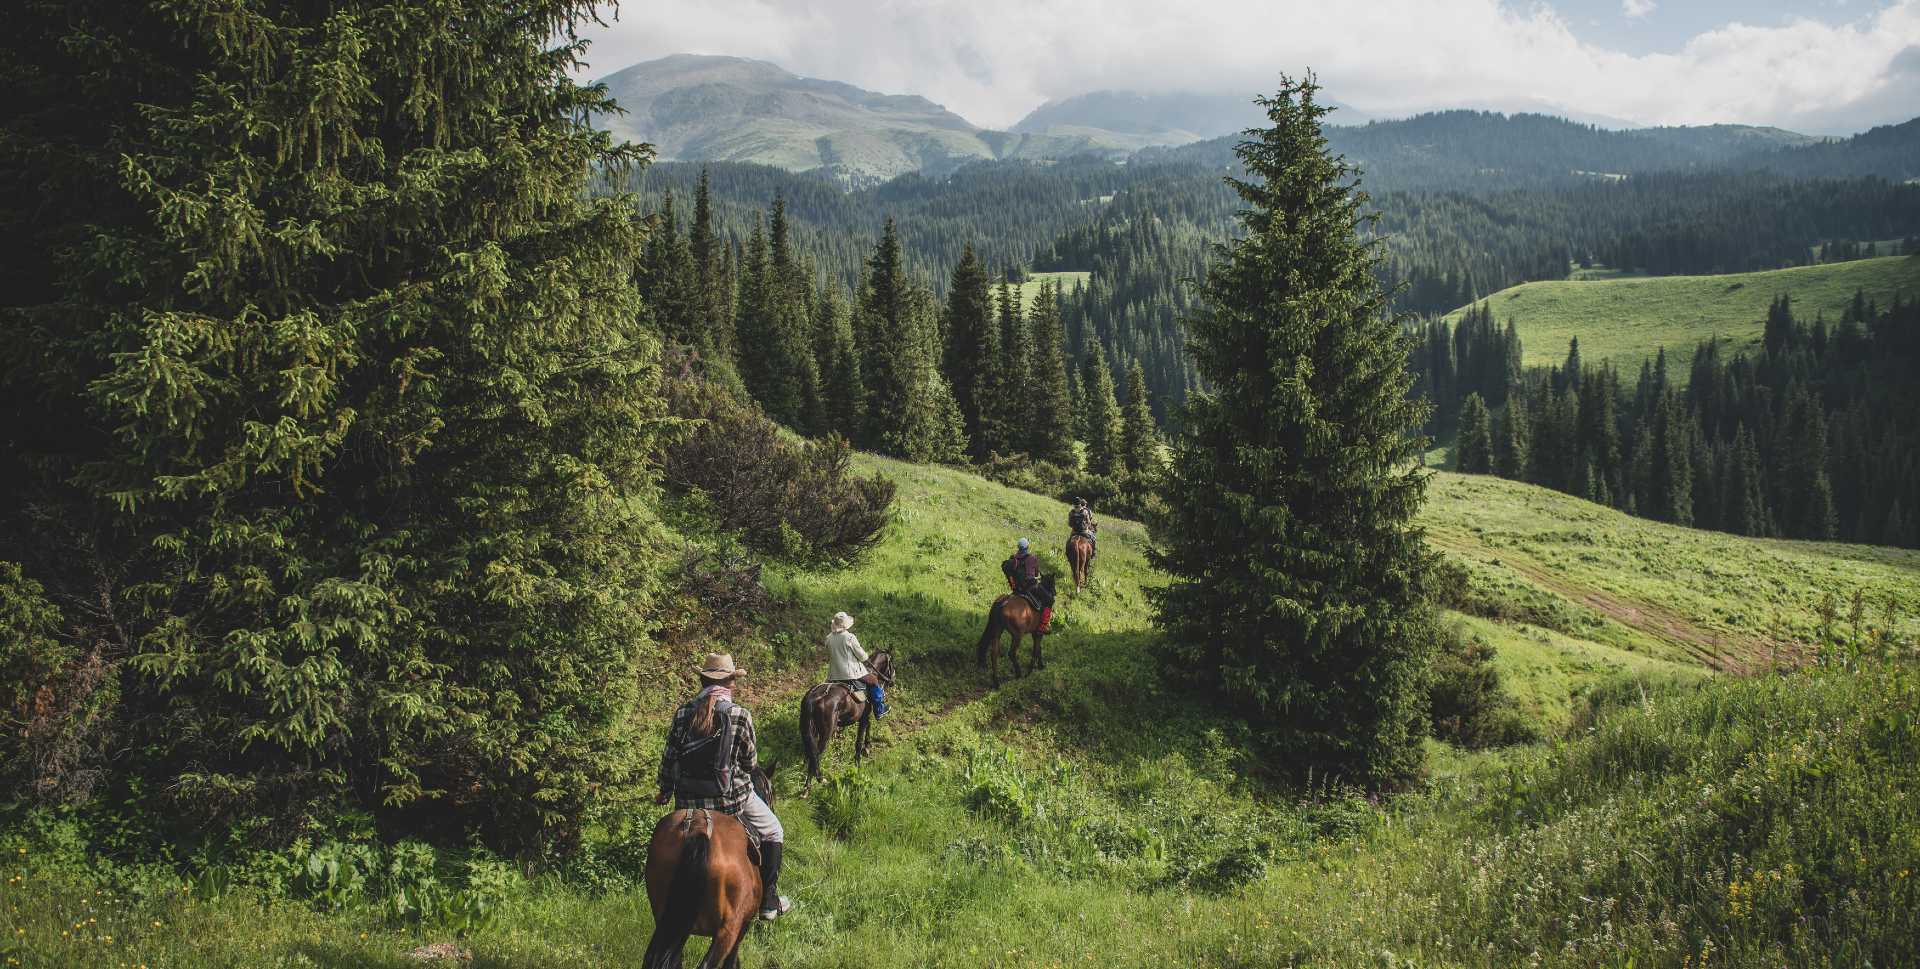 Quatre personnes à cheval descendant une montagne herbeuse entre des bosquets d'arbres.